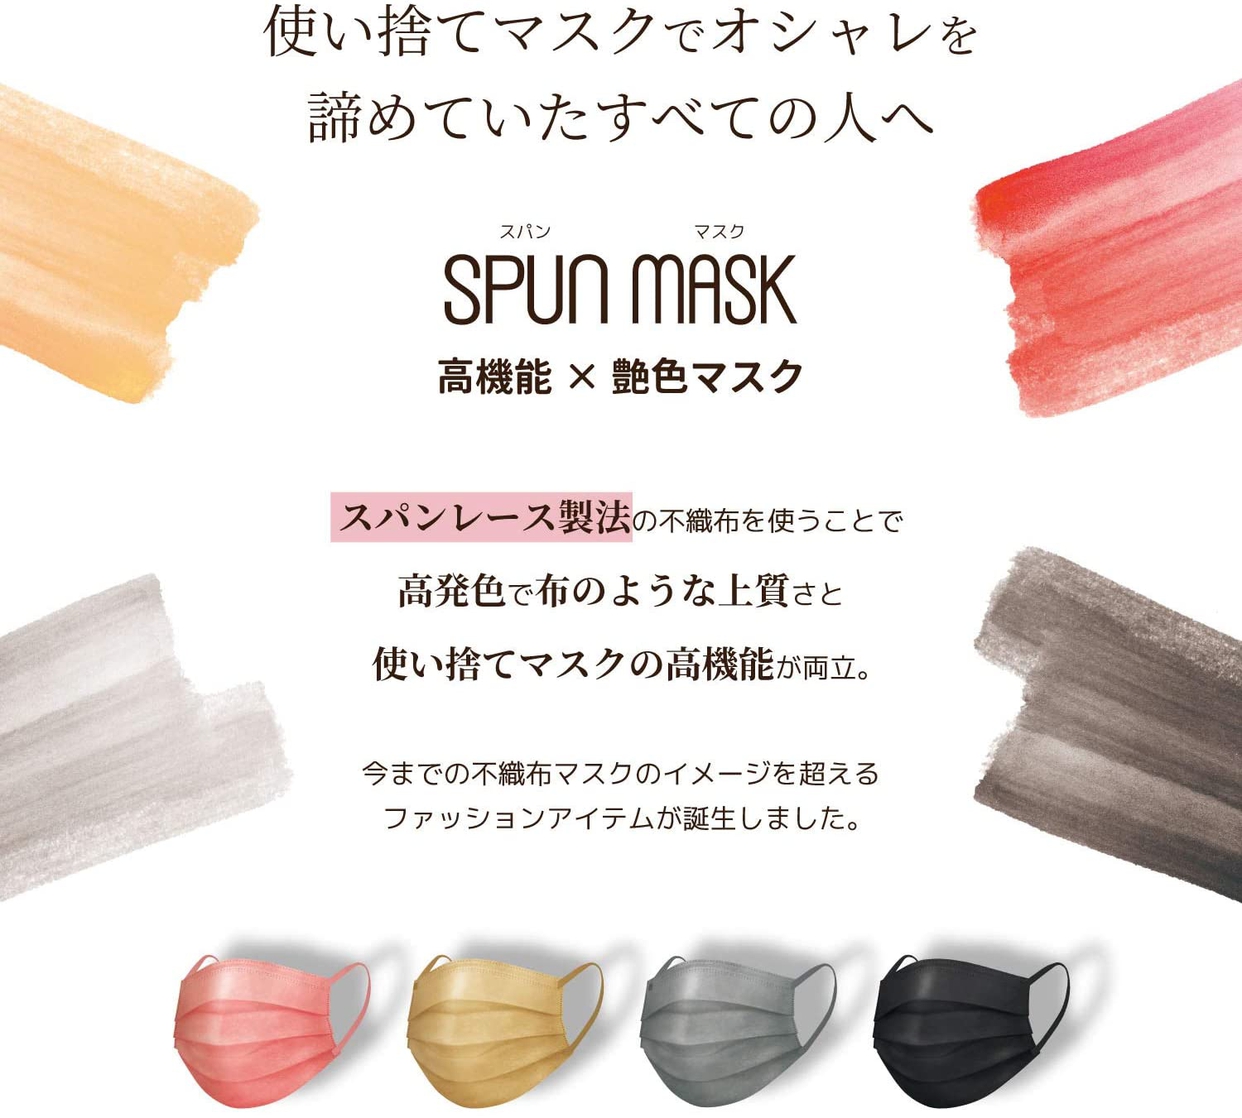 医食同源ドットコム(ISDG) スパンレース不織布カラーマスクの商品画像2 